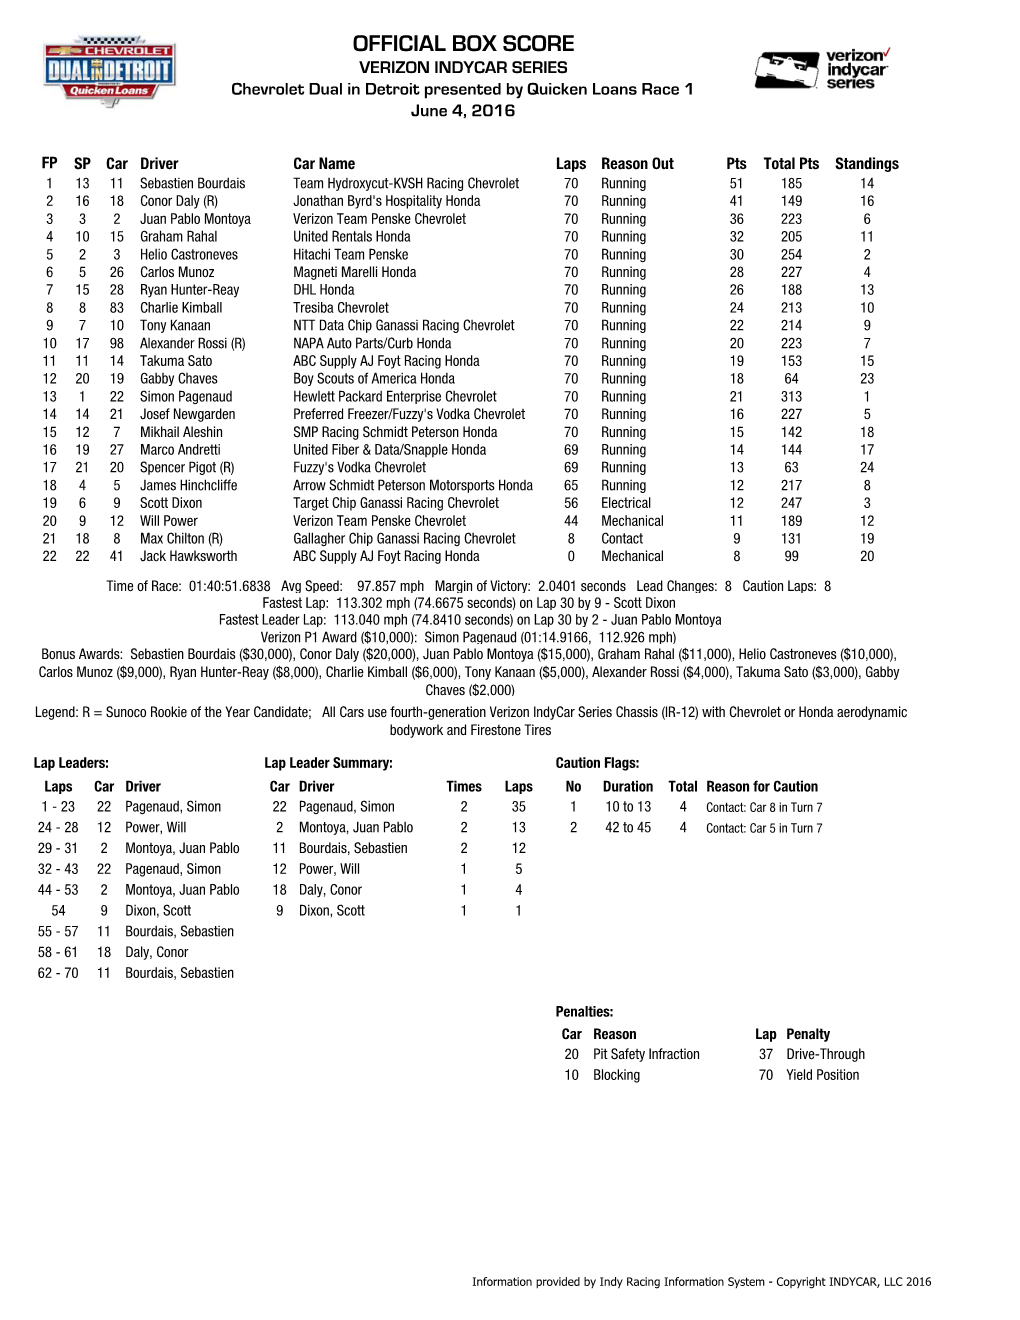 Chevrolet Dual in Detroit Race 1 Box Score.Xlsx